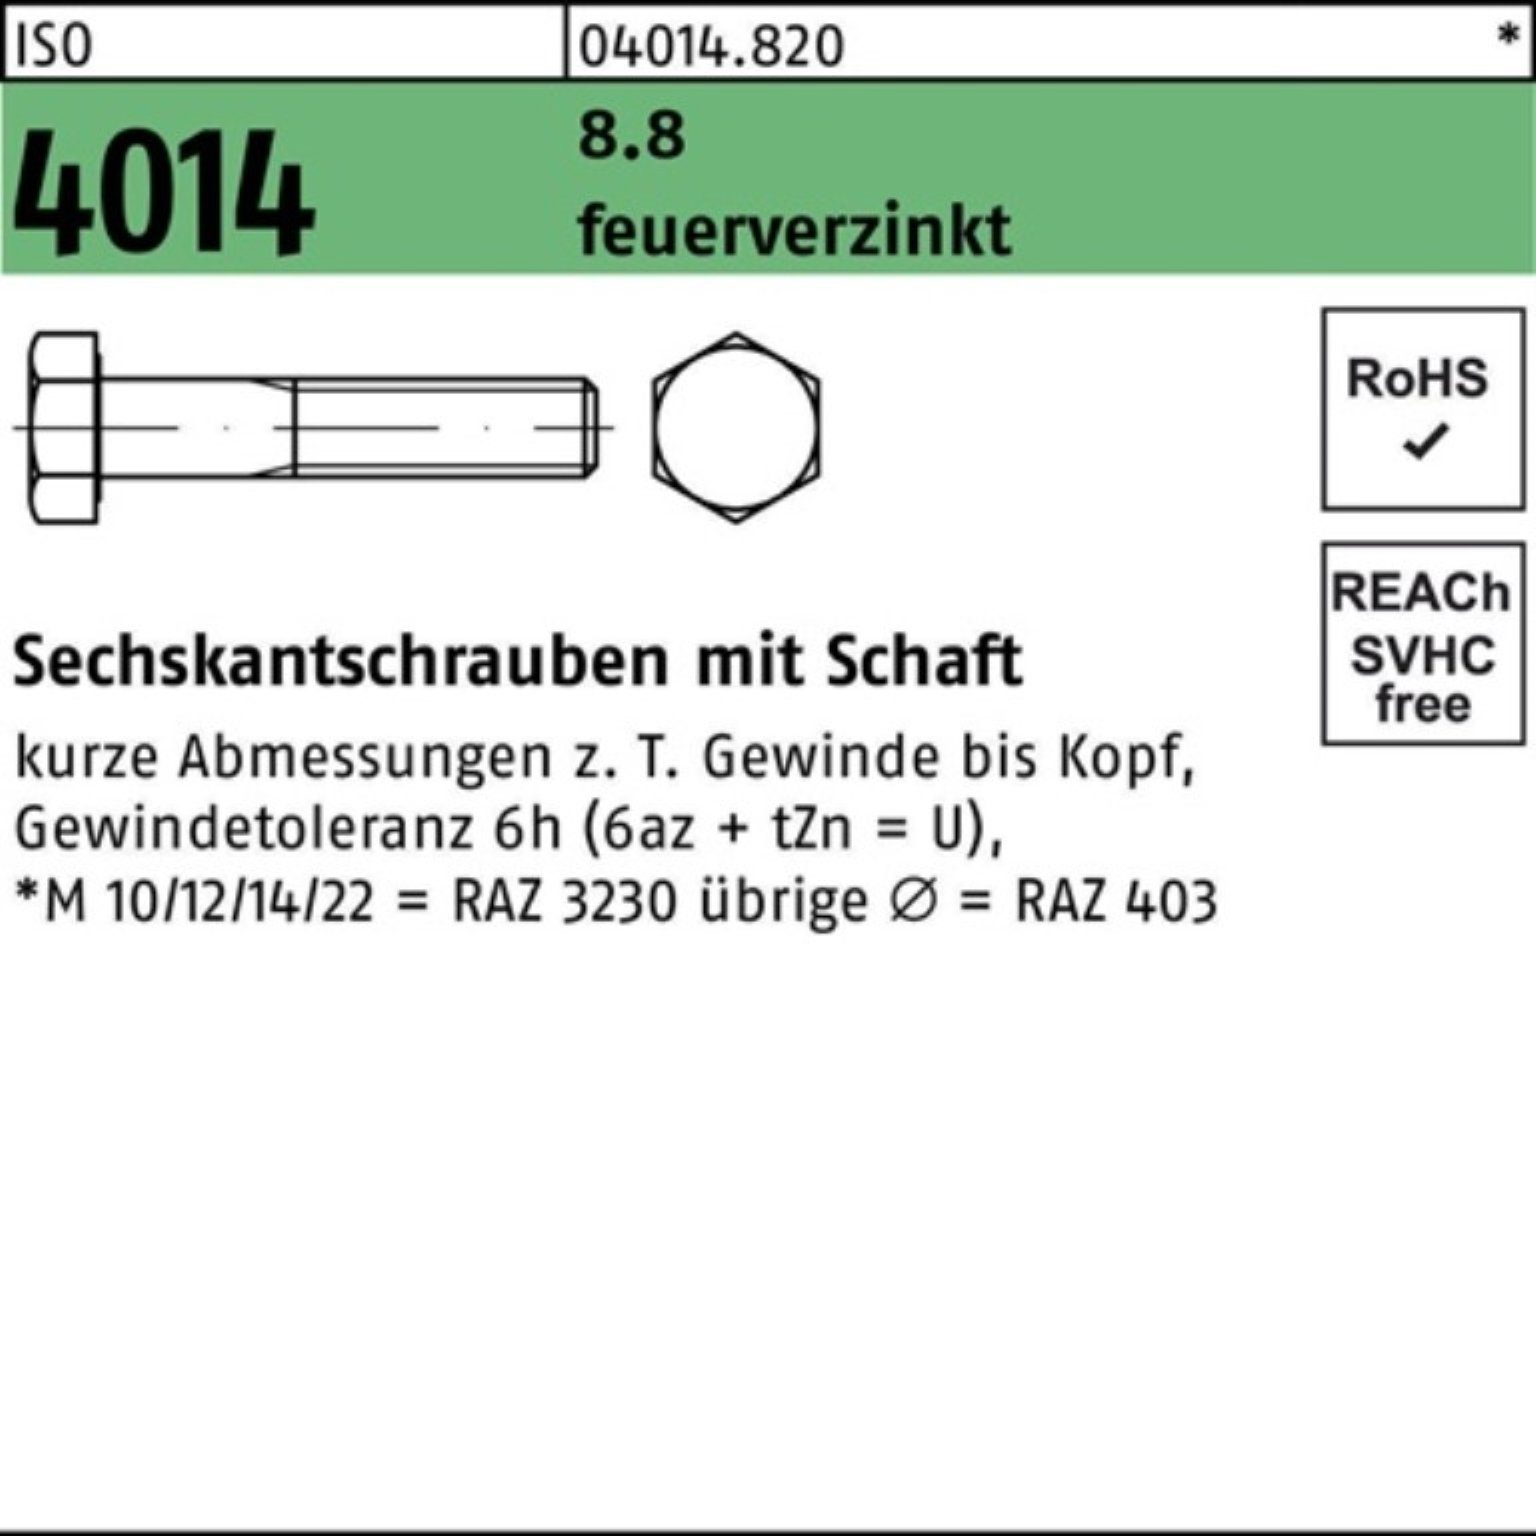 Bufab Sechskantschraube 200er Pack Sechskantschraube ISO 4014 Schaft M8x 35 8.8 feuerverz. 200